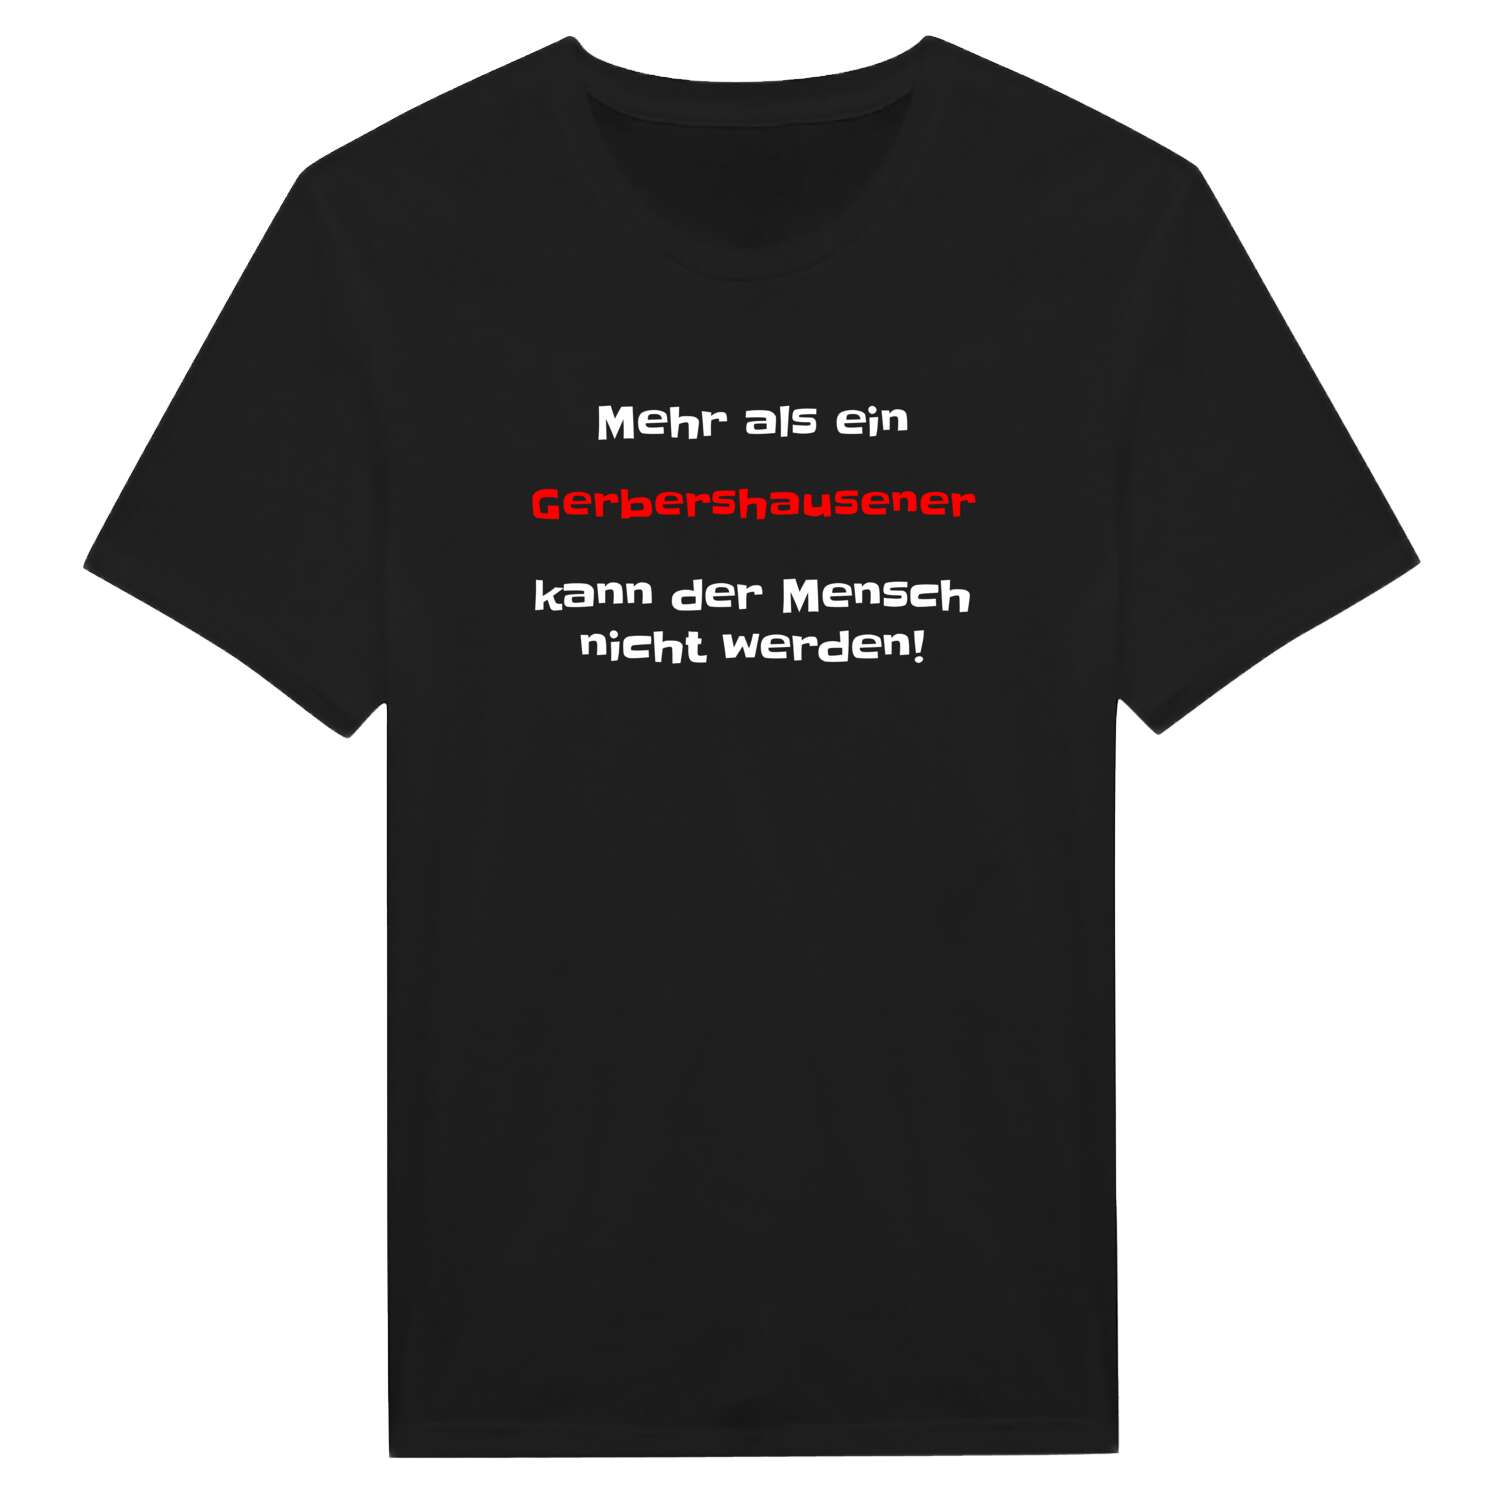 Gerbershausen T-Shirt »Mehr als ein«